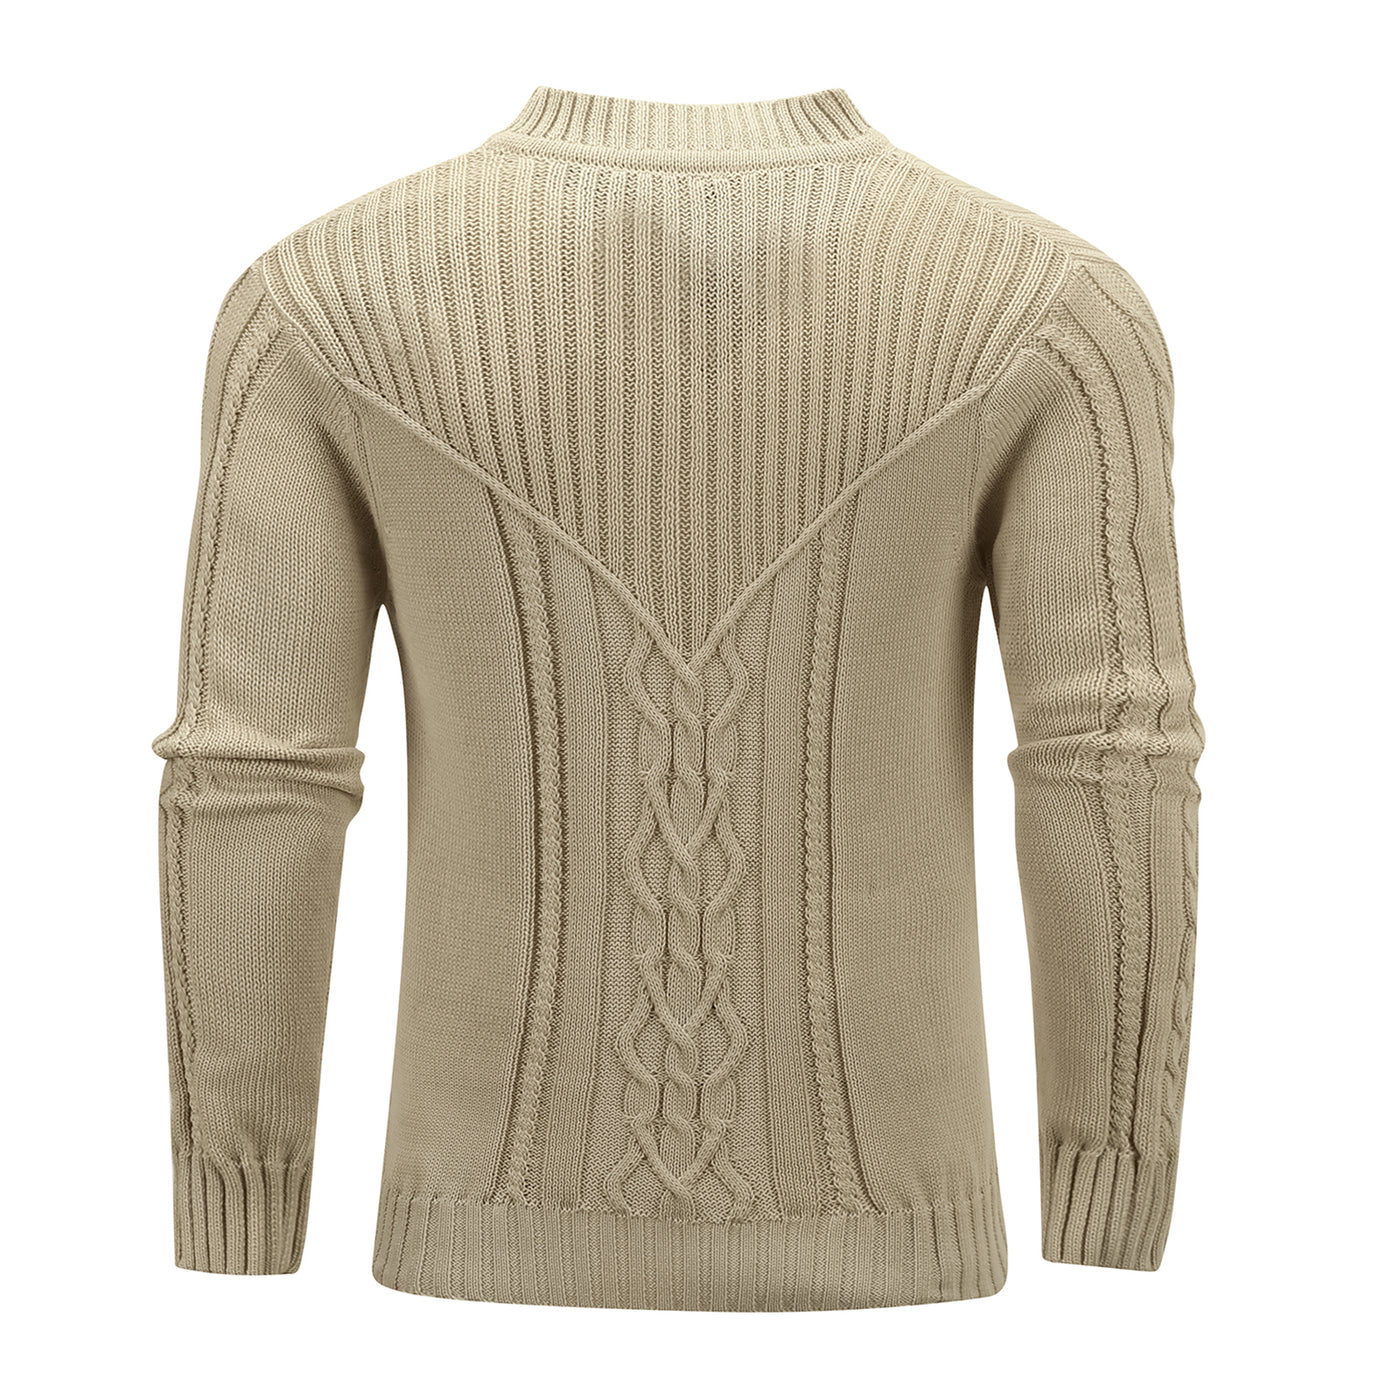 Phoenix Mens Premium Sweater Axl Rodd